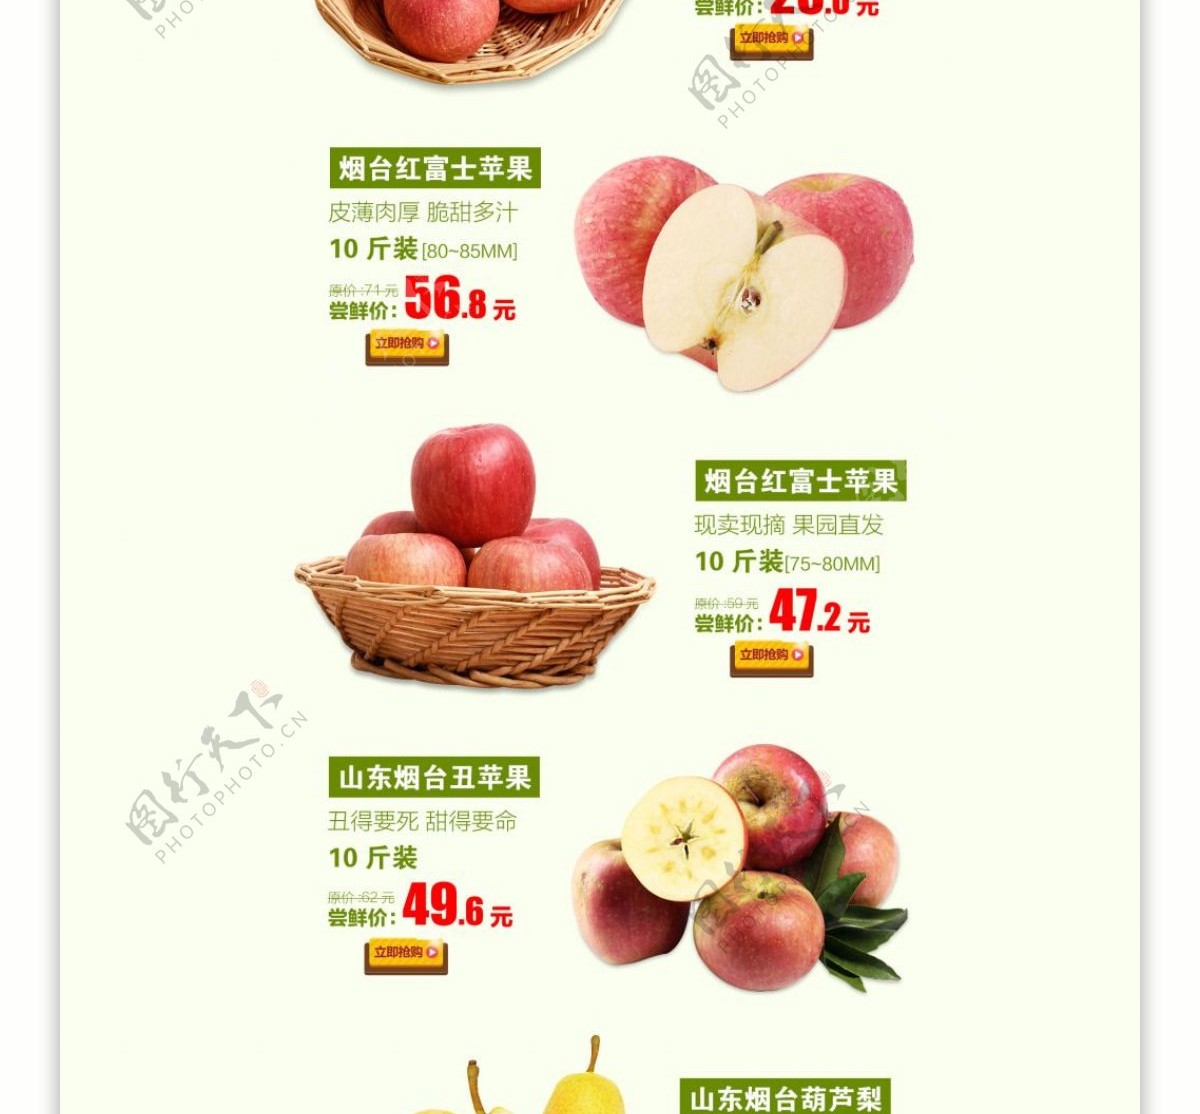 水果首页设计苹果新鲜直达从枝头到舌尖